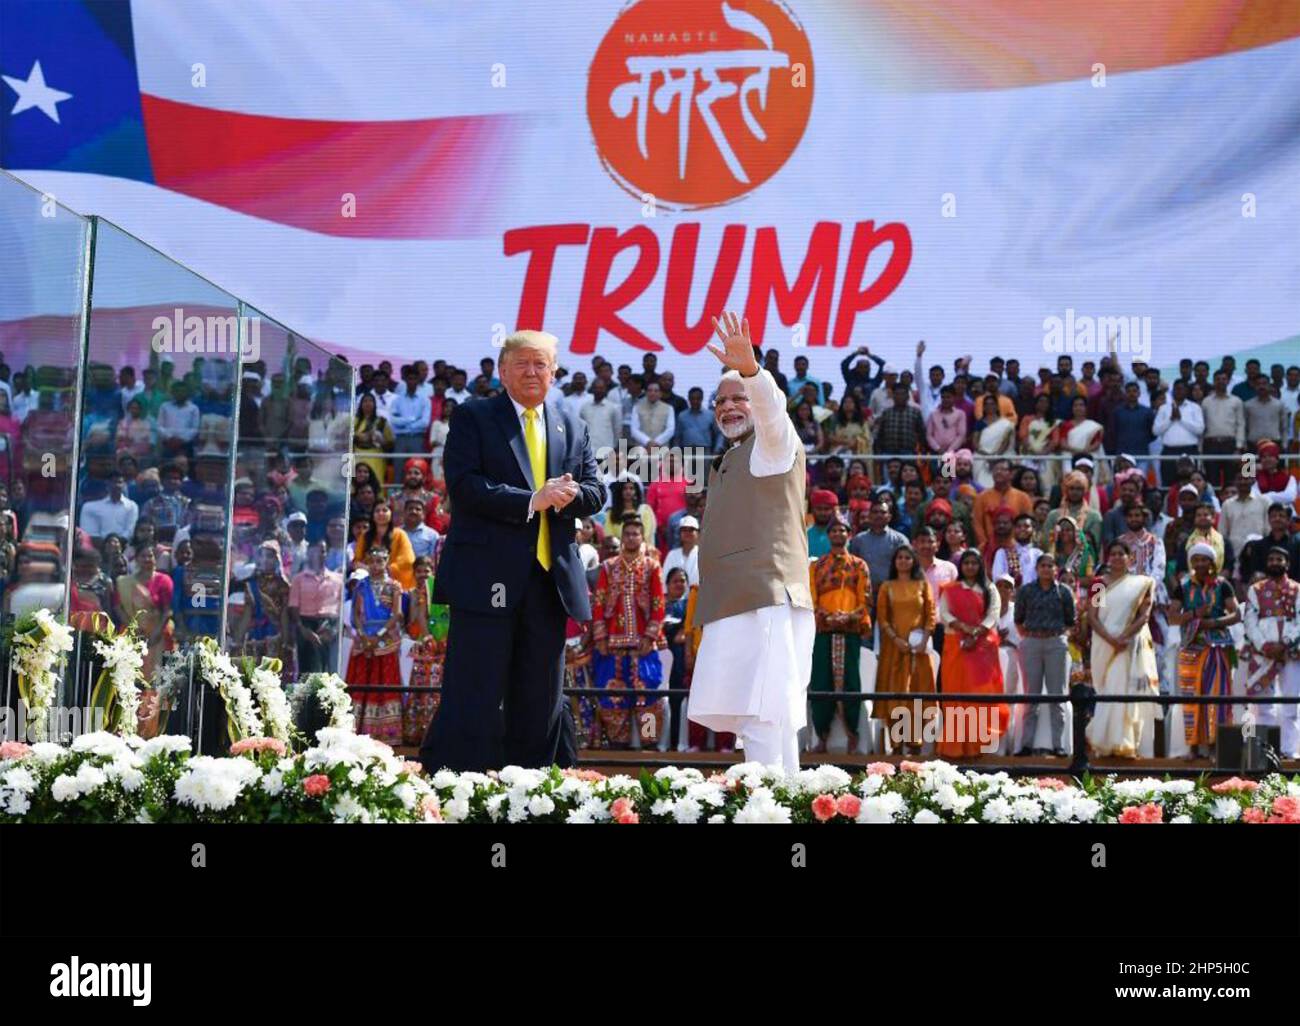 LE PRÉSIDENT AMÉRICAIN DONALD TRUMP lors d'un rassemblement bienvenu à Ahmedabad, en Inde, avec le président indien Narendra Modi, le 24 février 2020. Banque D'Images